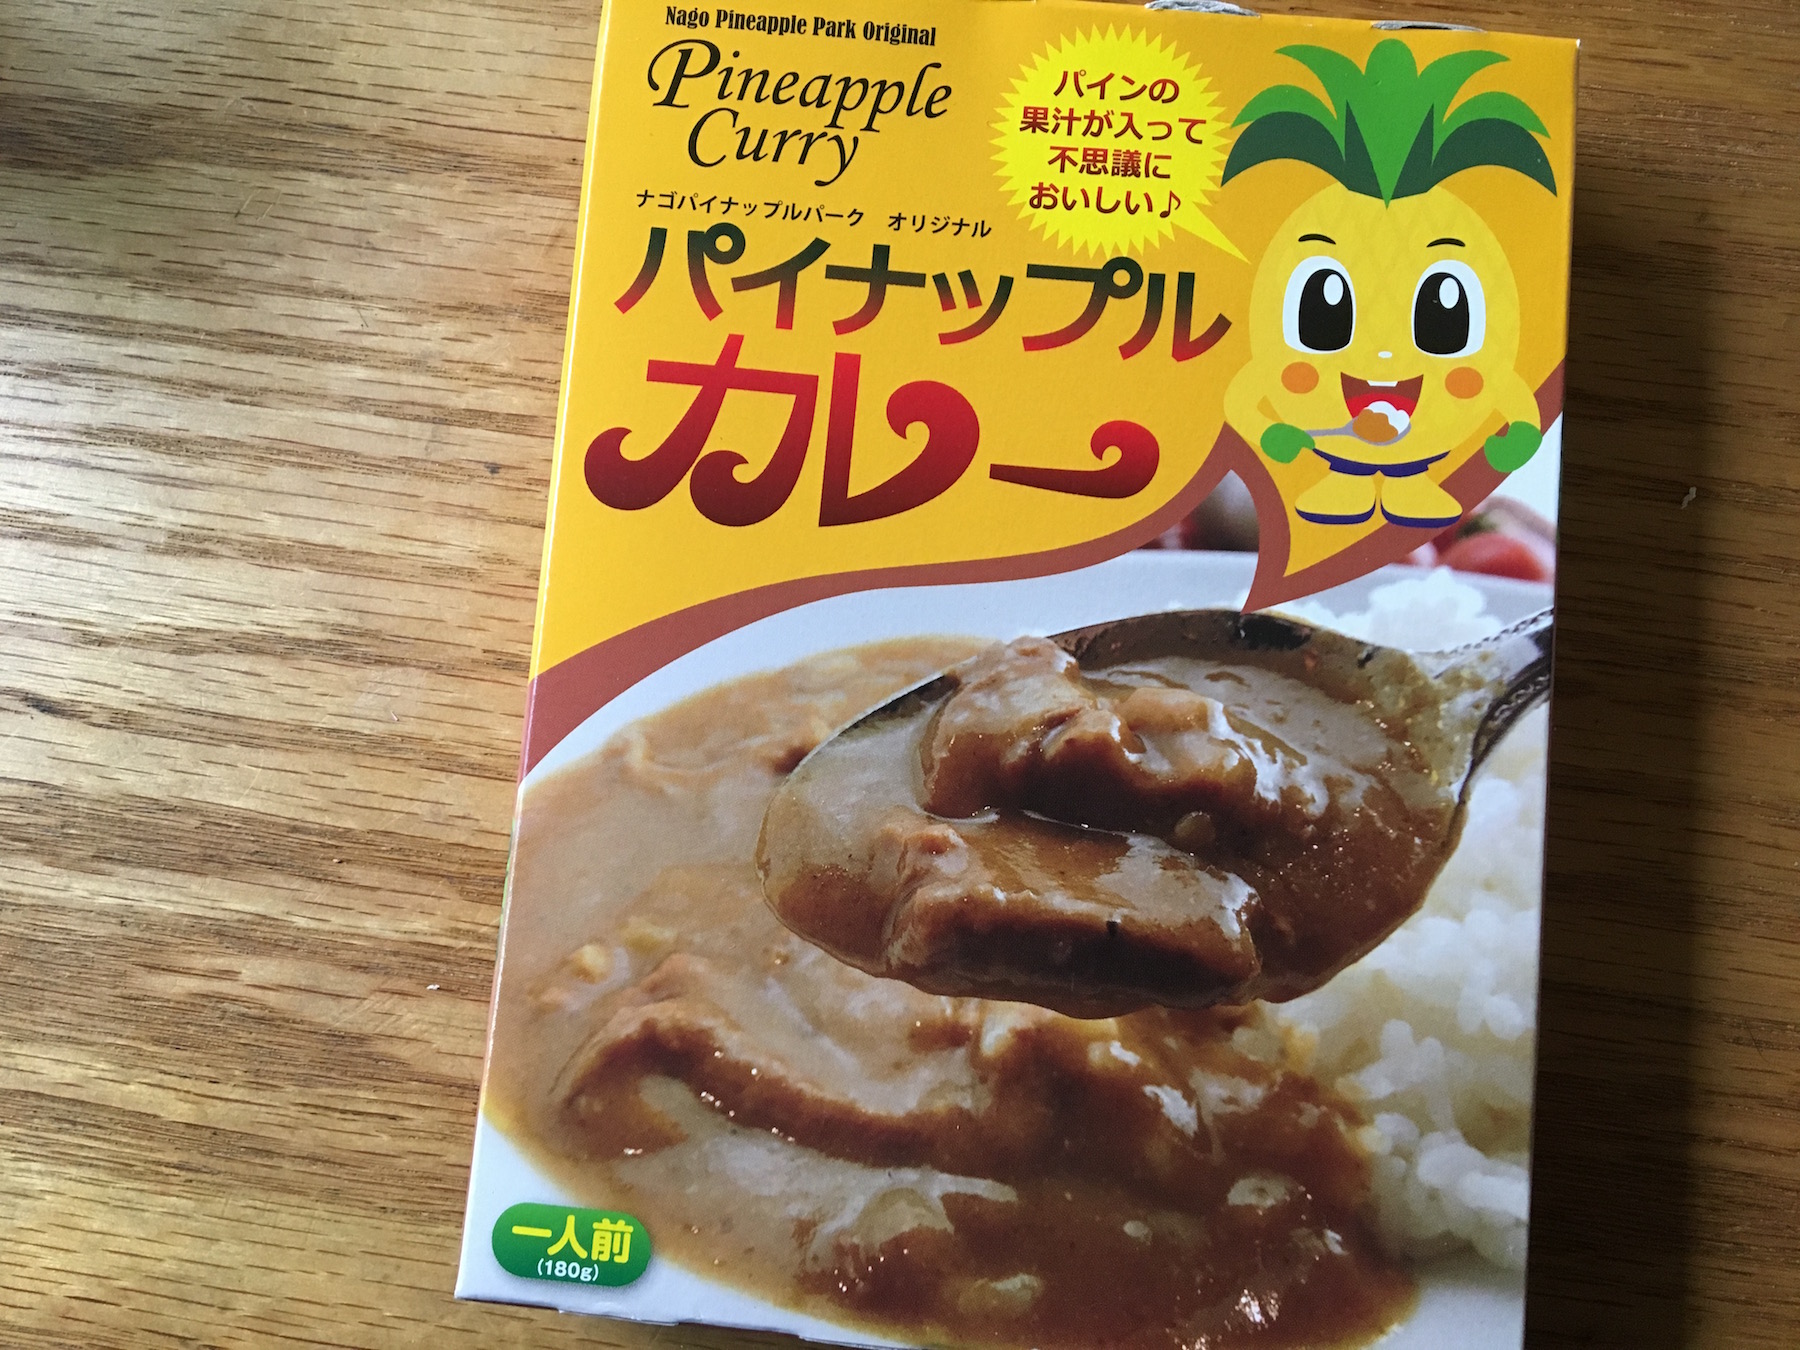 【レトルトカレー】ナゴパイナップルパーク パイナップルカレーを食べる